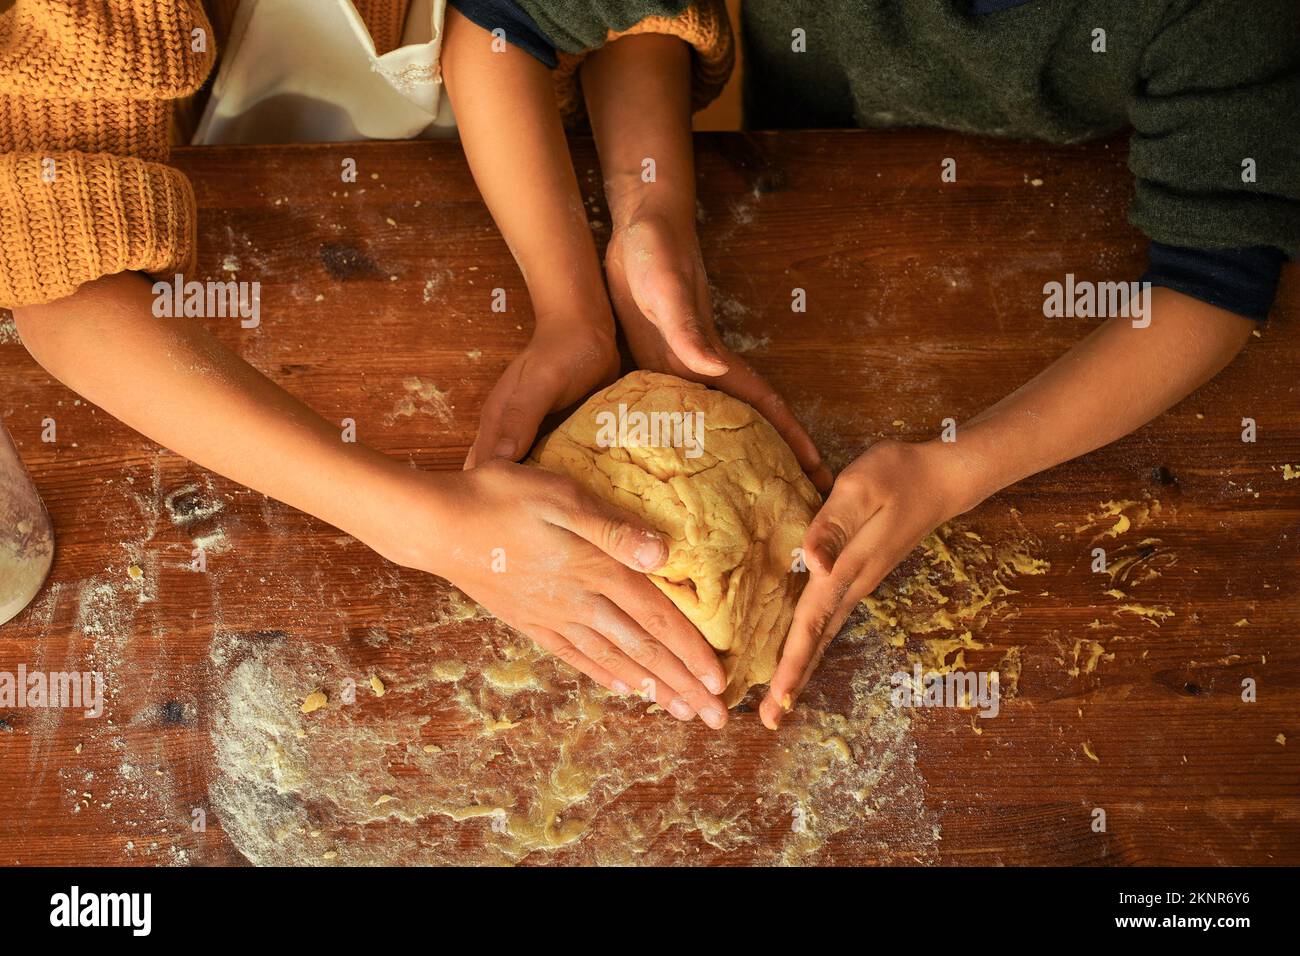 Les enfants pétrissent la pâte à biscuits avec leurs mains sur une table en bois. Banque D'Images